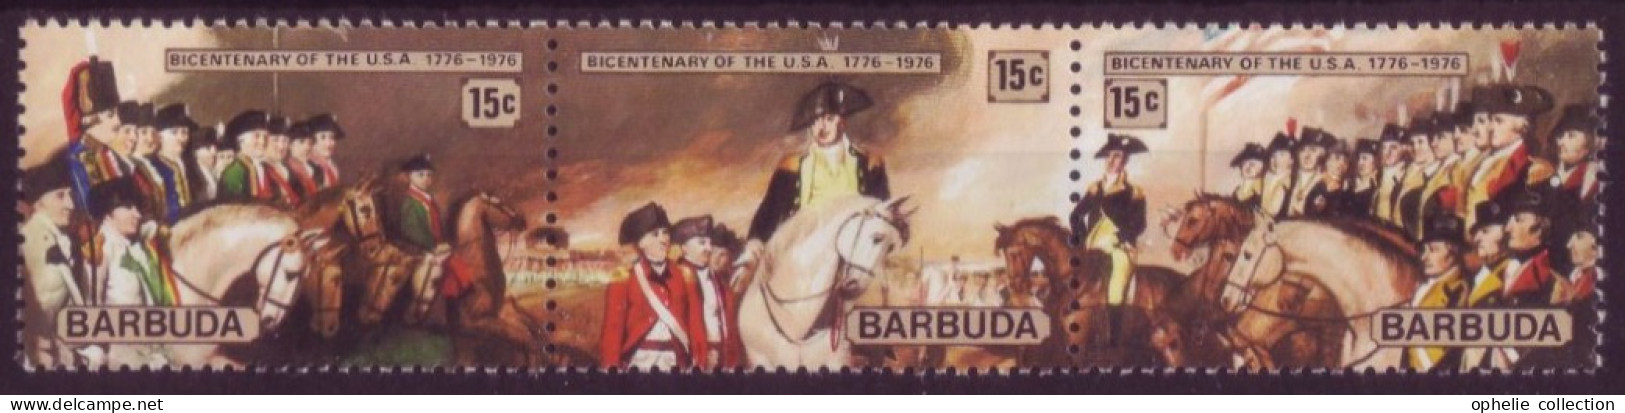 Amérique - Barbuda - Bandeau Bicentenary Of The USA  1776-1976  - 7334 - Amerika (Varia)